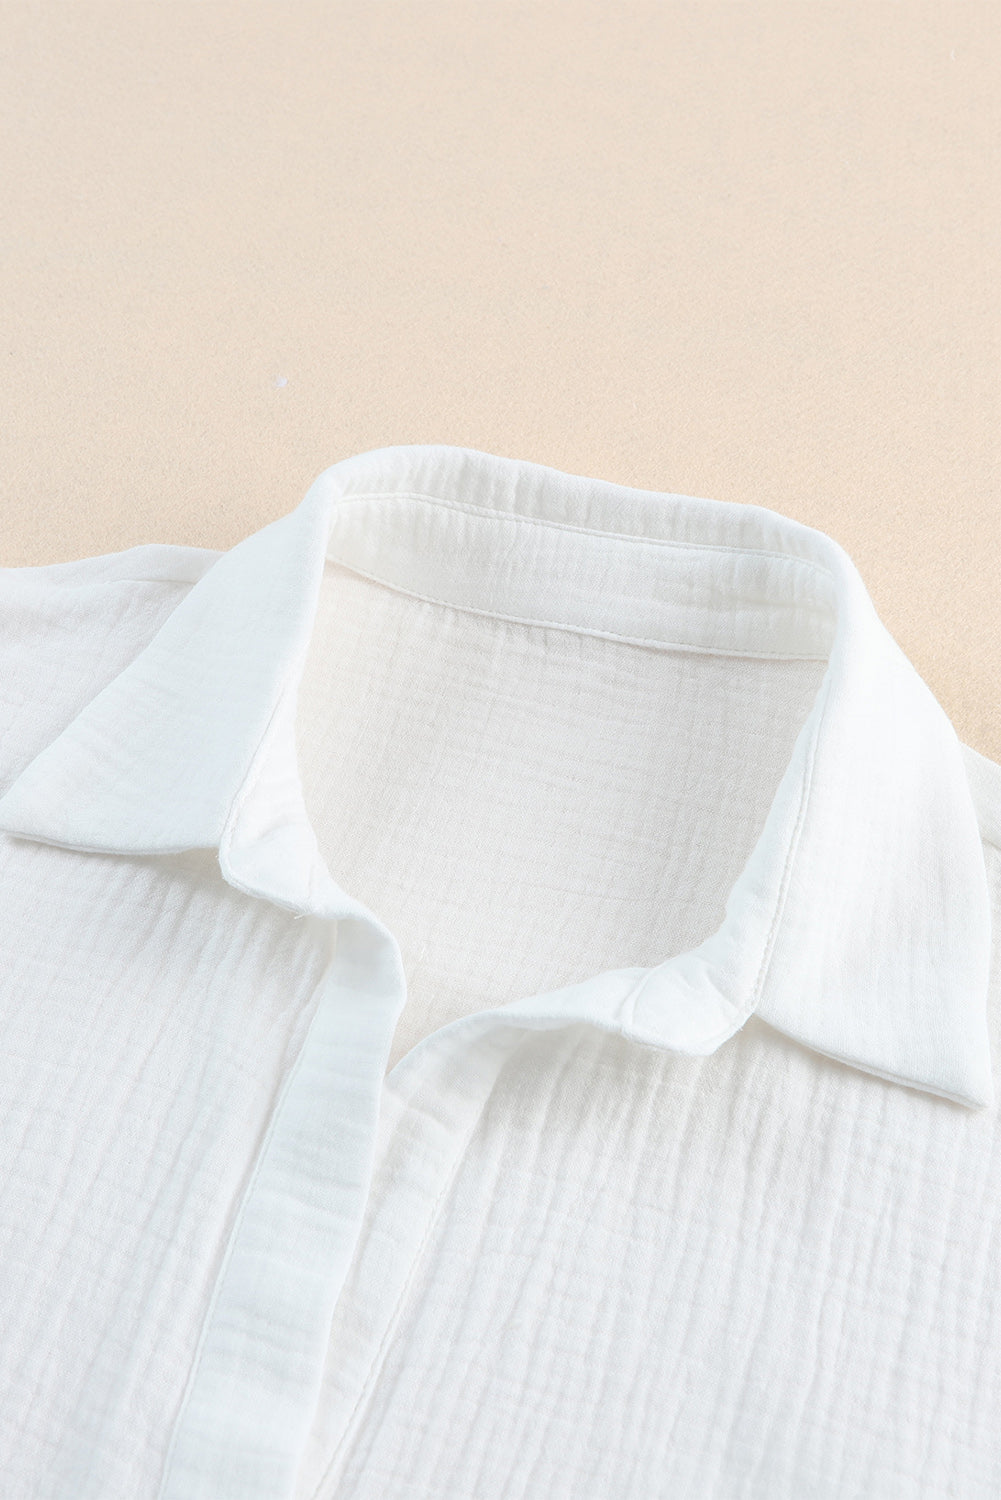 Camicia a mezza manica con bottoni annodata testurizzata bianca